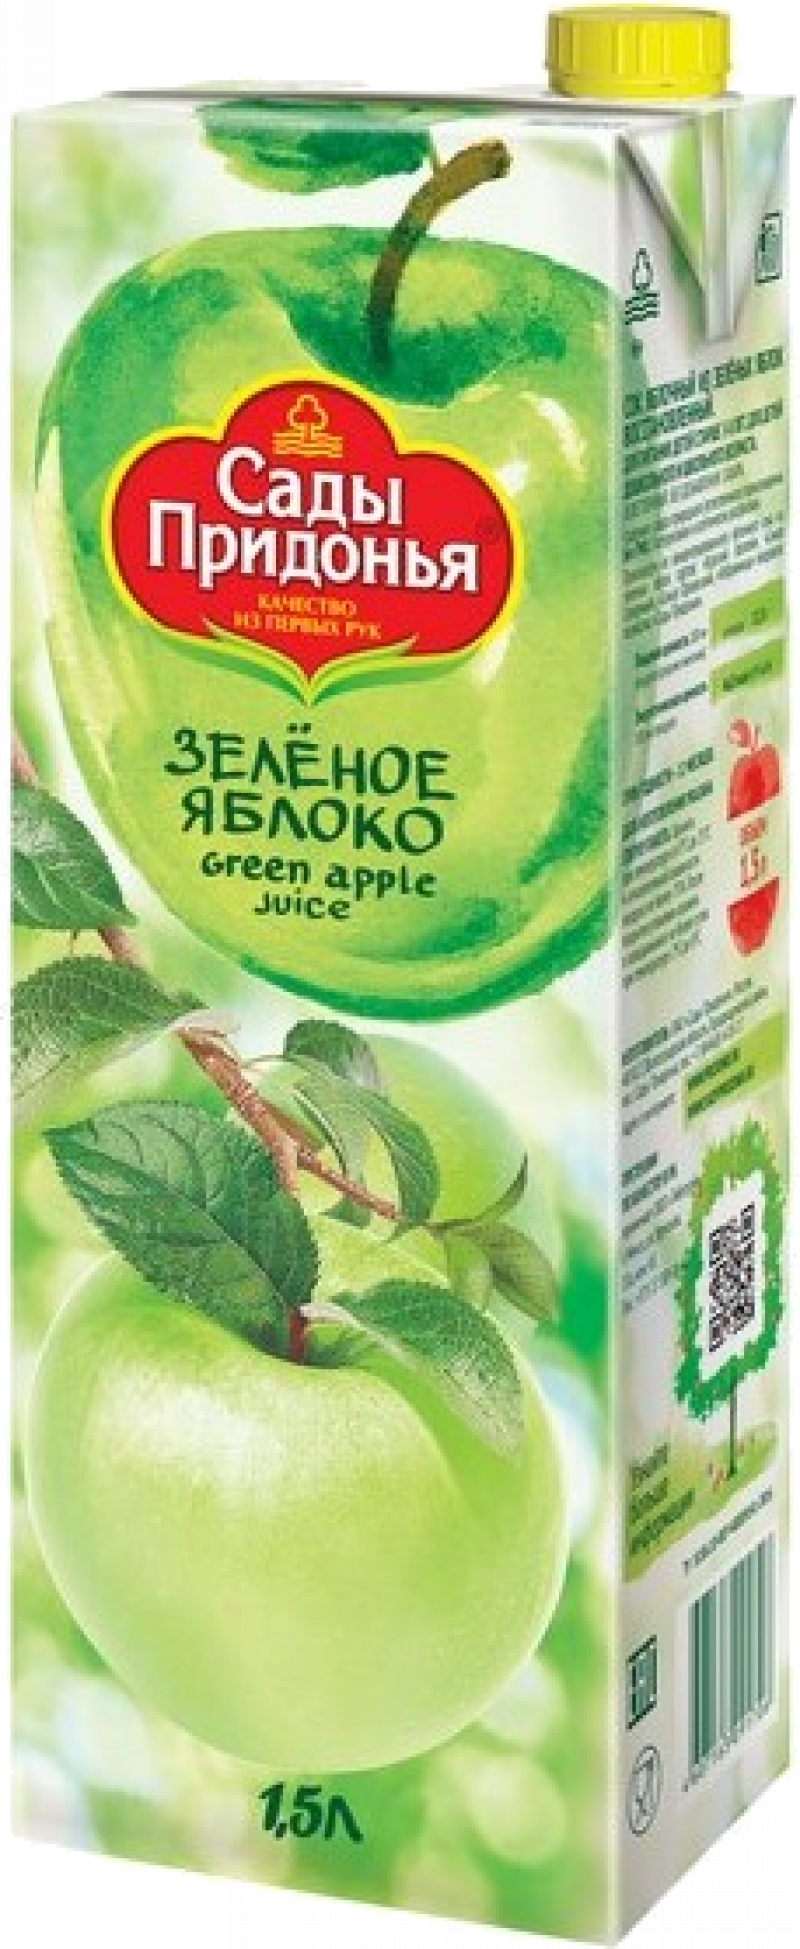 Сок 1,5л Сады Придонья сок из зеленых яблок